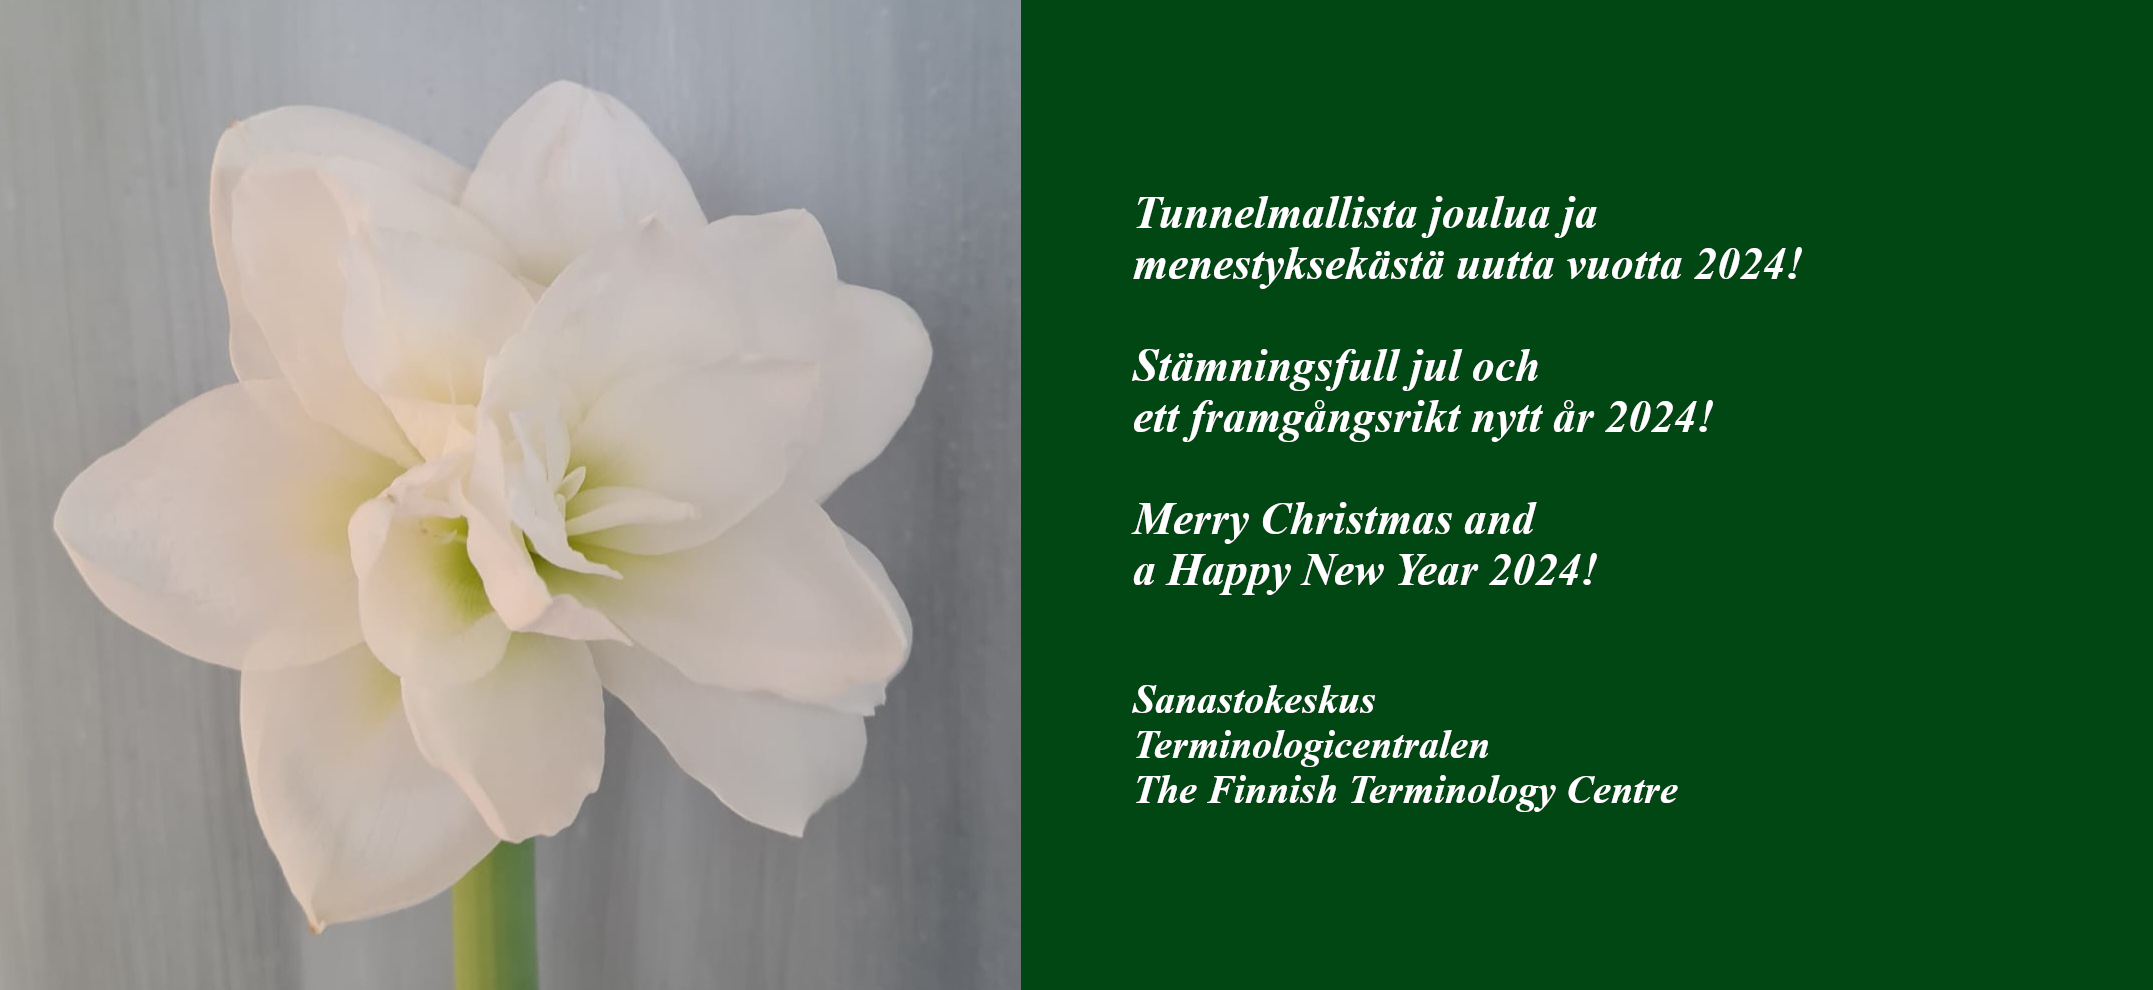 Julhälsning, avbildad en stor vit amaryllis